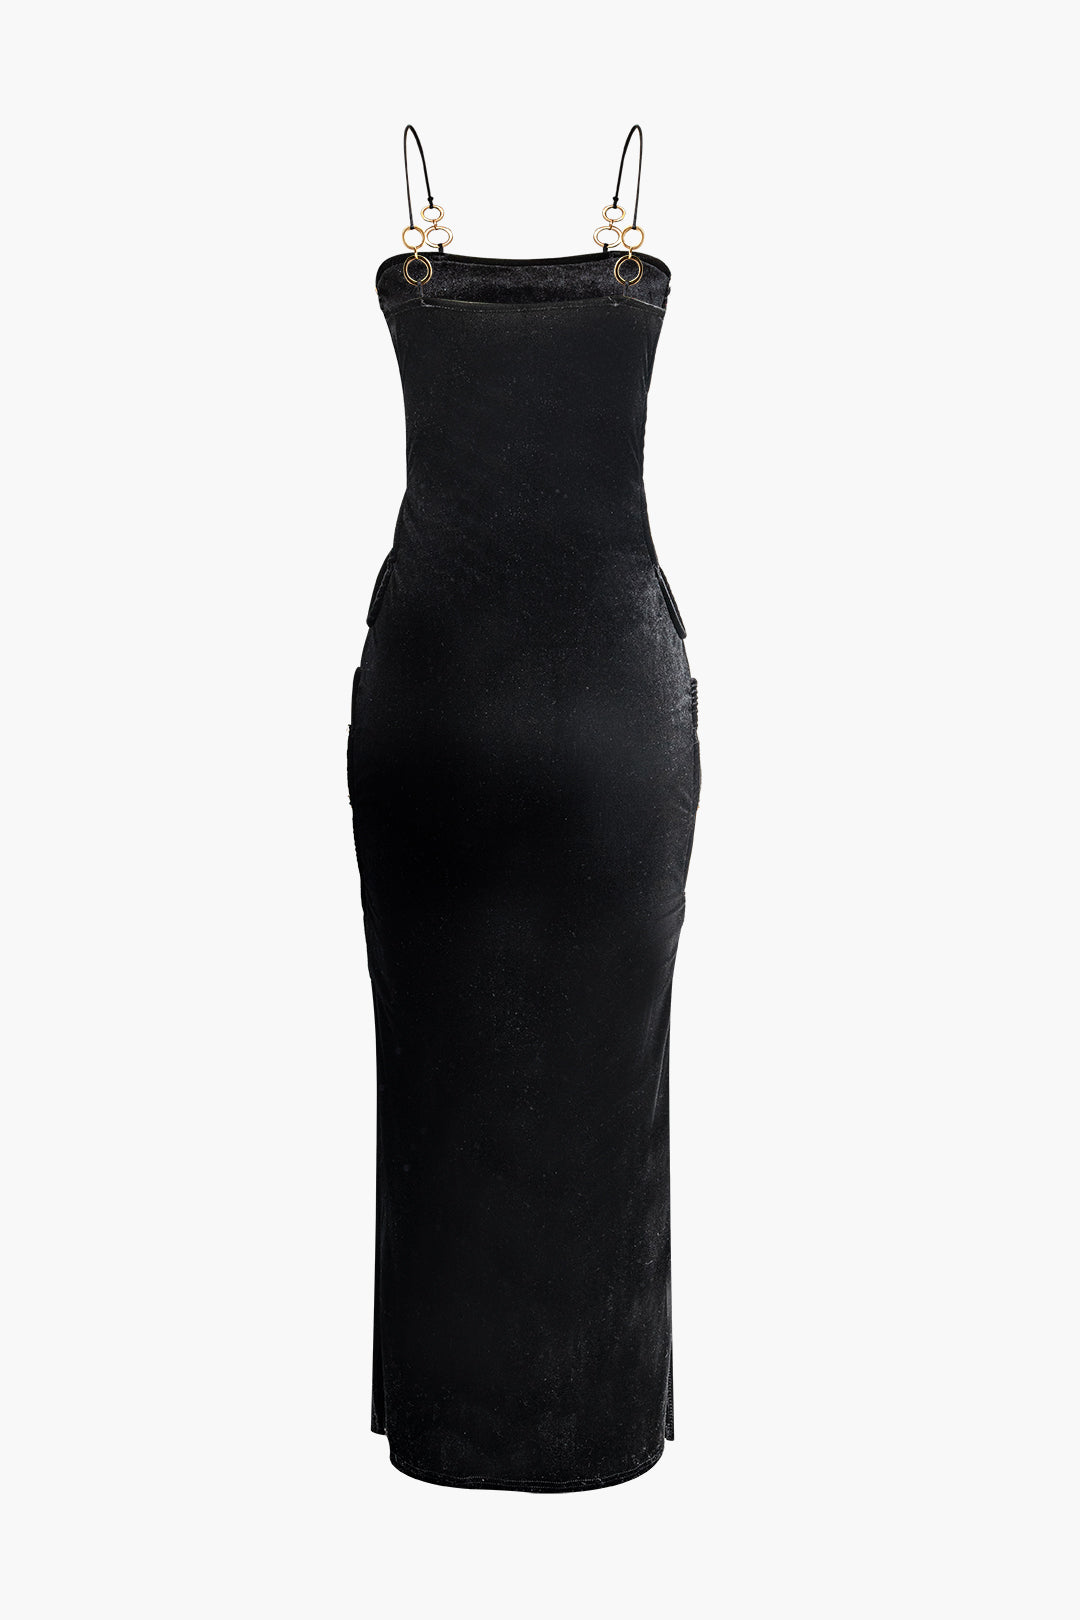 Velvet O-Ring Side Cut Out Slit Maxi Dress